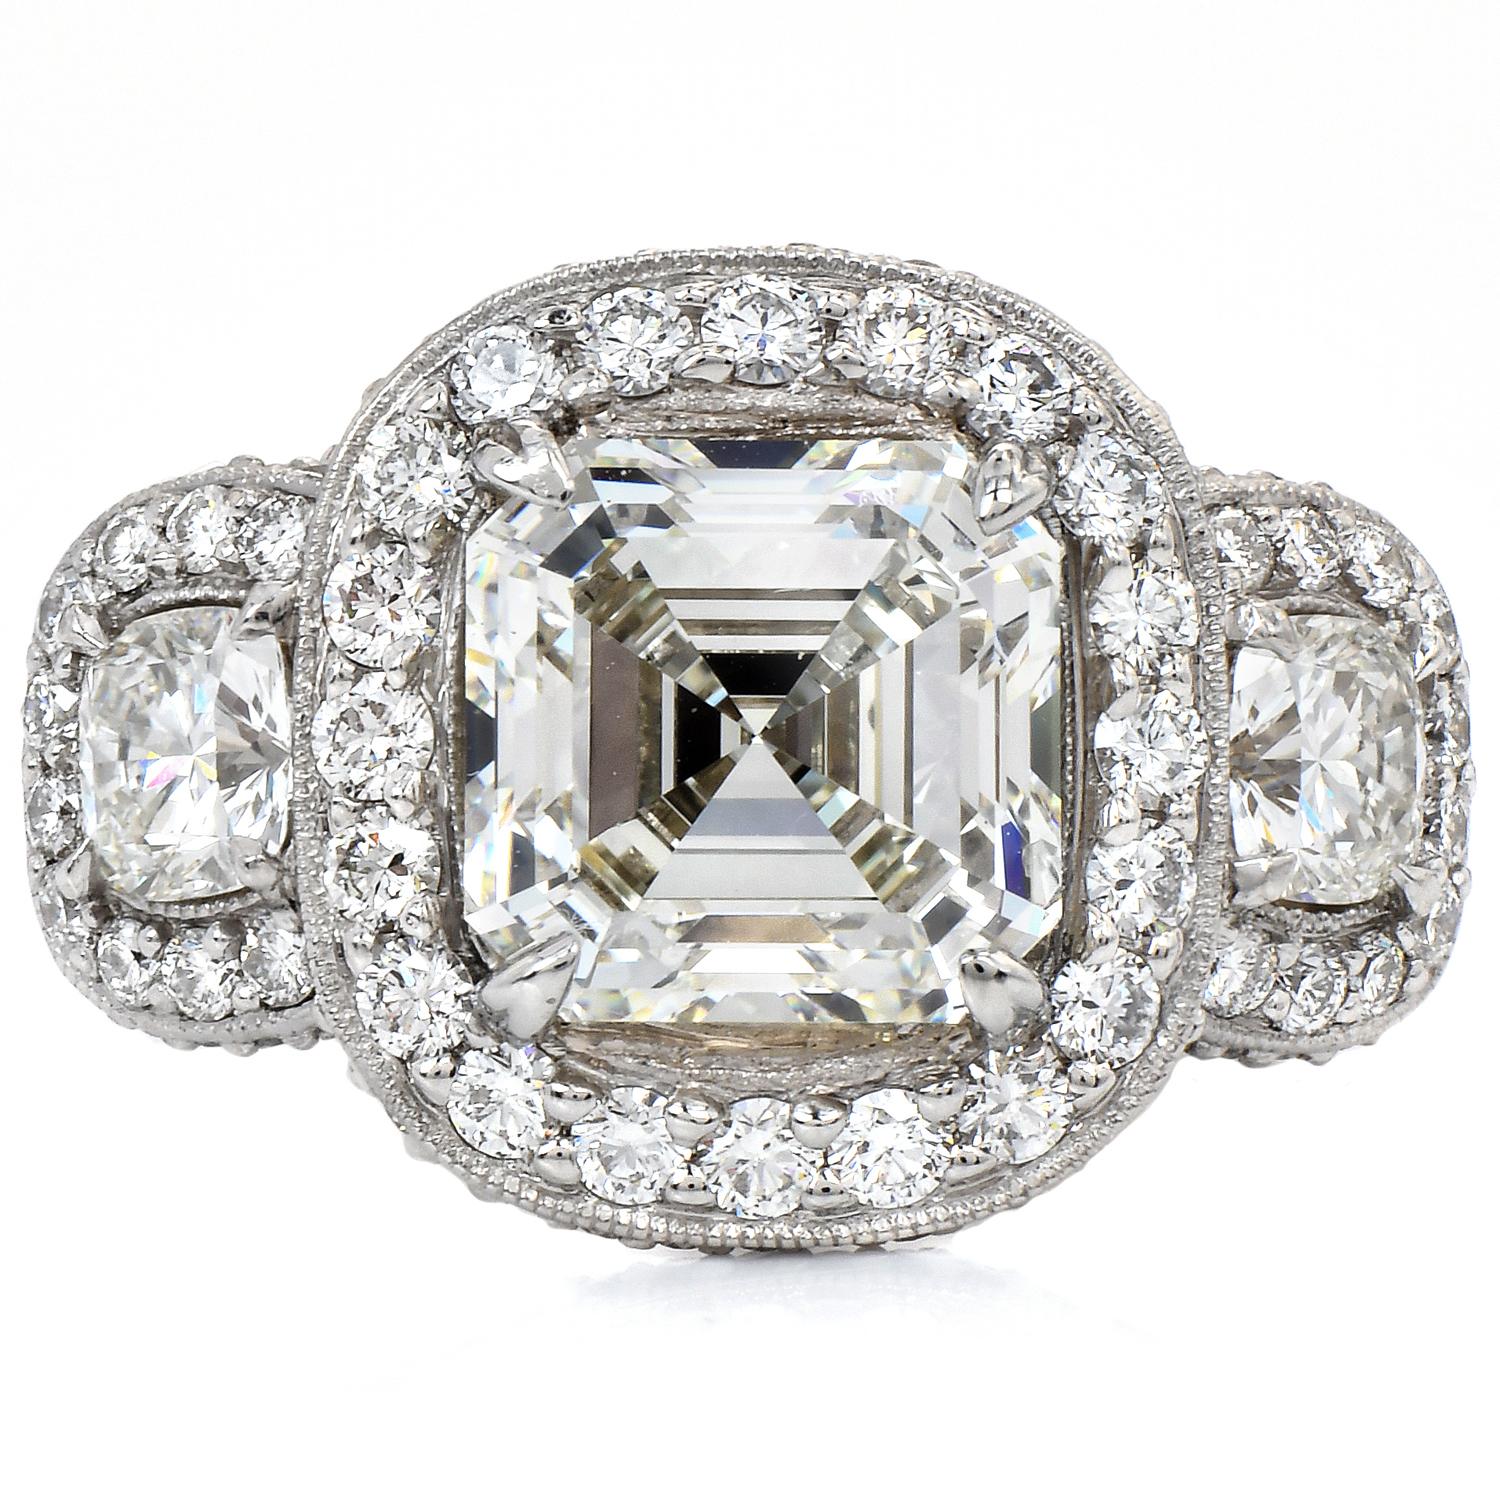 Erleben Sie höchste Eleganz und Luxus mit diesem GIA-zertifizierten 5,49-Karat-Diamant-Platin-Halo-Dreifachsteinring.

Dieser exquisite Diamantring ist ein wahres Meisterwerk, das durch sein Funkeln und seine unvergleichliche Handwerkskunst